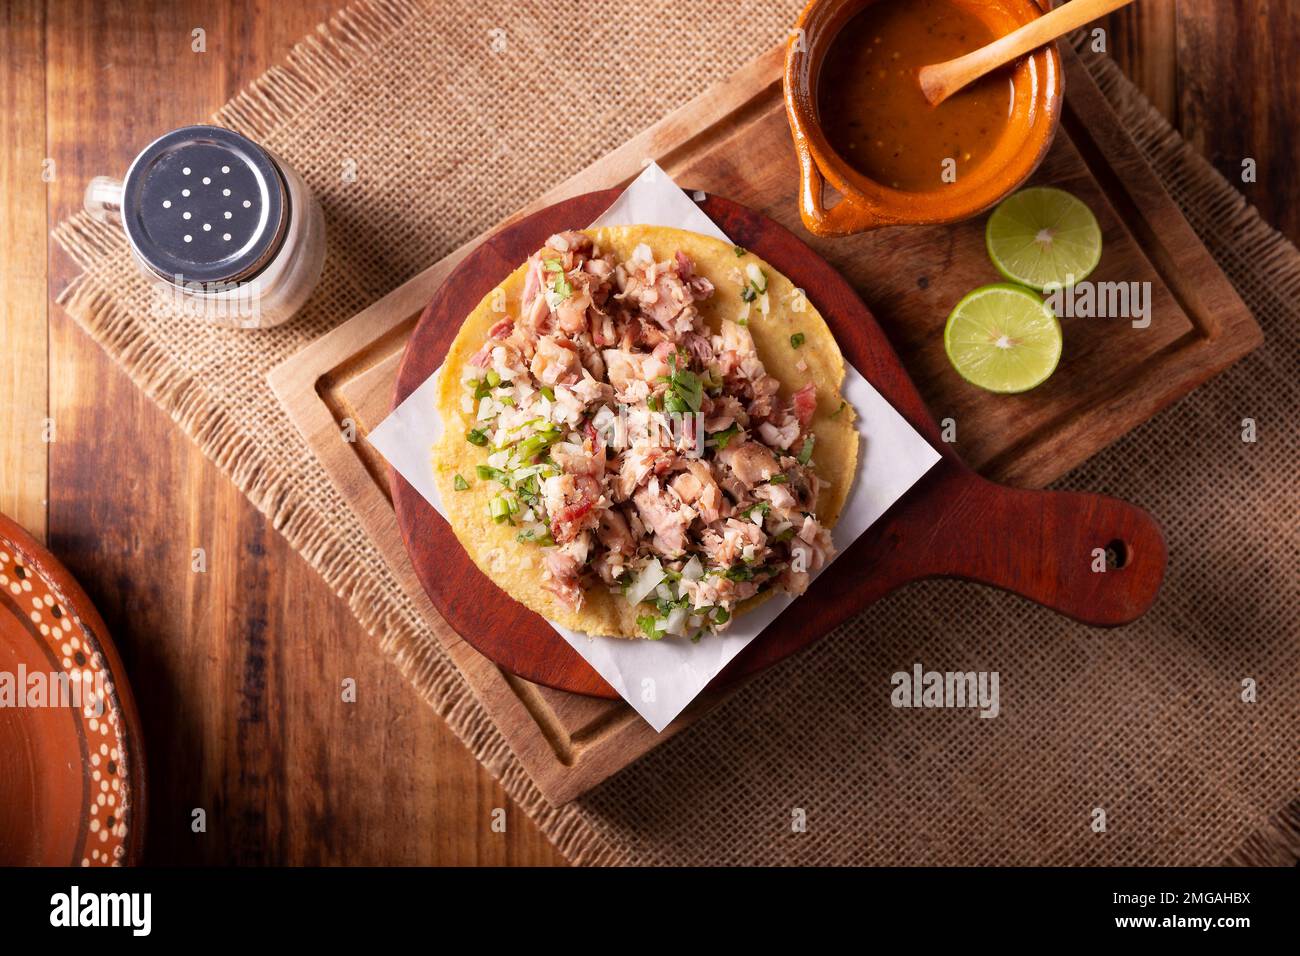 Taco de Carnitas. Tortilla au cornmeal avec porc frite. Apéritif mexicain traditionnel généralement accompagné de coriandre, d'oignon et de sauce chaude. Banque D'Images